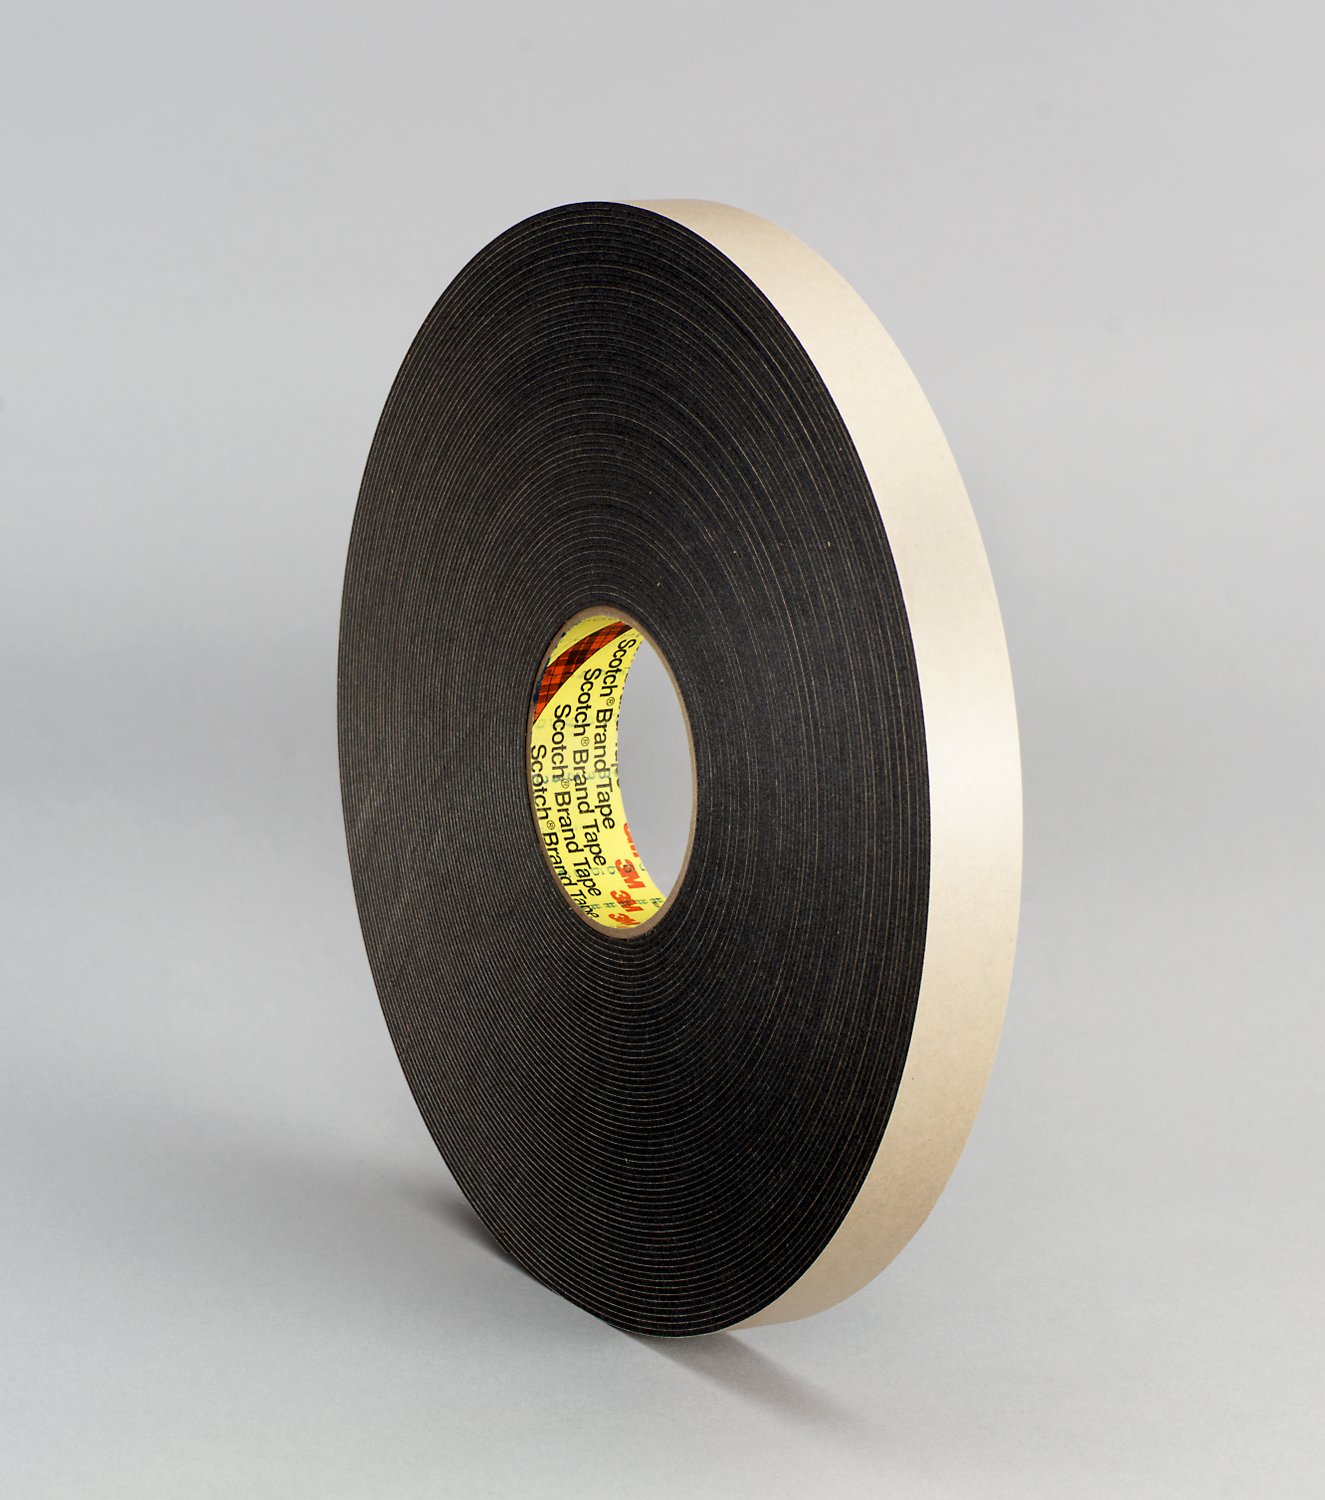 7000123706 - 3M Double Coated Polyethylene Foam Tape 4496B, Black, 3/4 in x 36 yd,
62 mil, 12 rolls per case